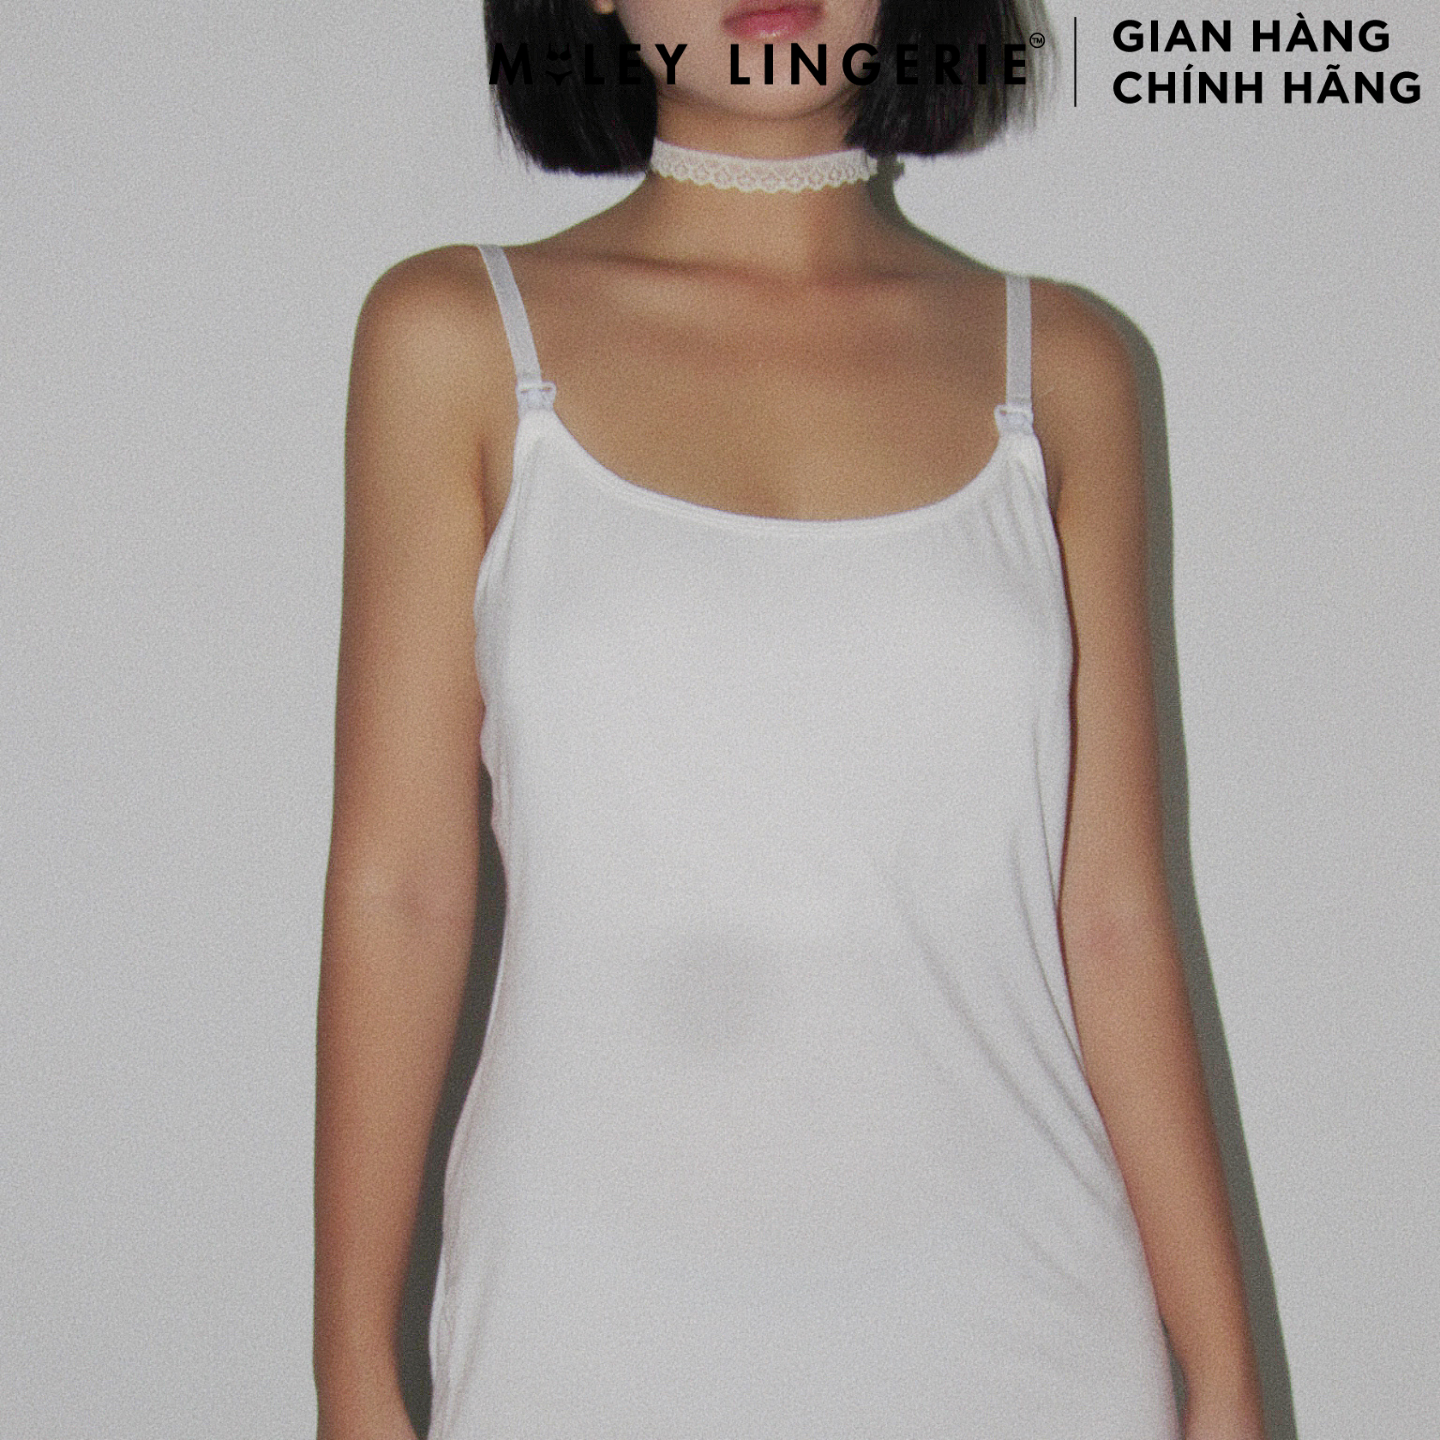 Áo Dây  Vải Sợi Thiên Nhiên Cao Cấp Bamboo Miley Lingerie - Màu trắng PBS01